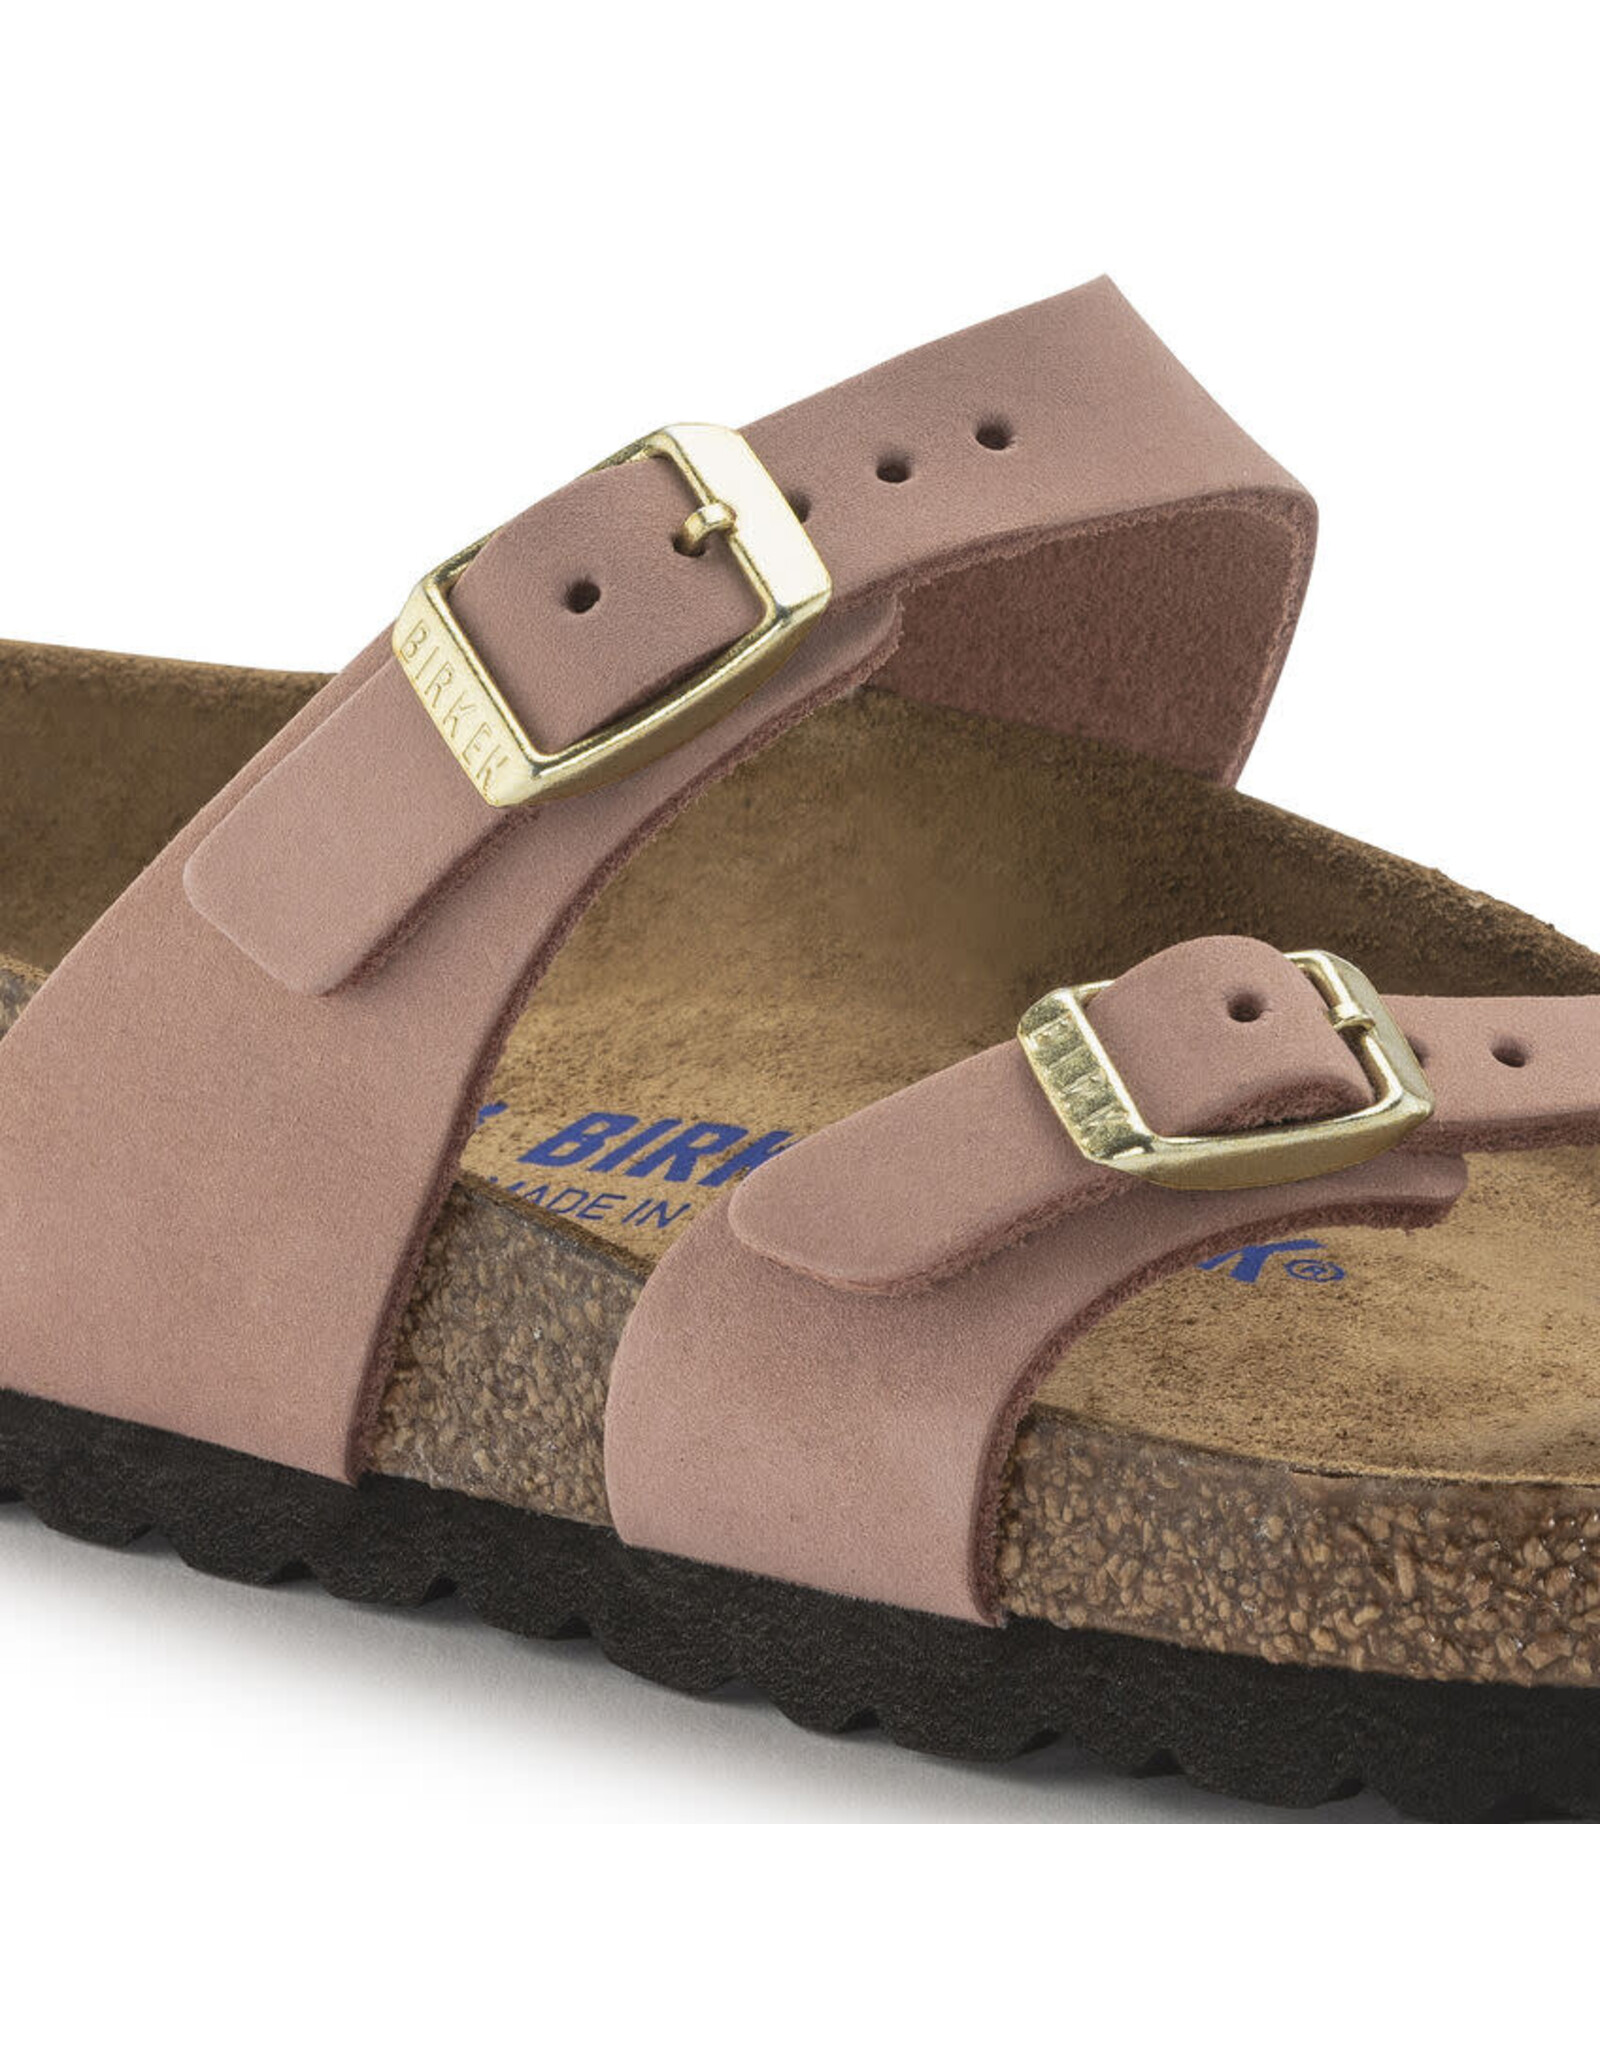 Birkenstock Arizona Nubuck Leather Soft Footbed Sandal